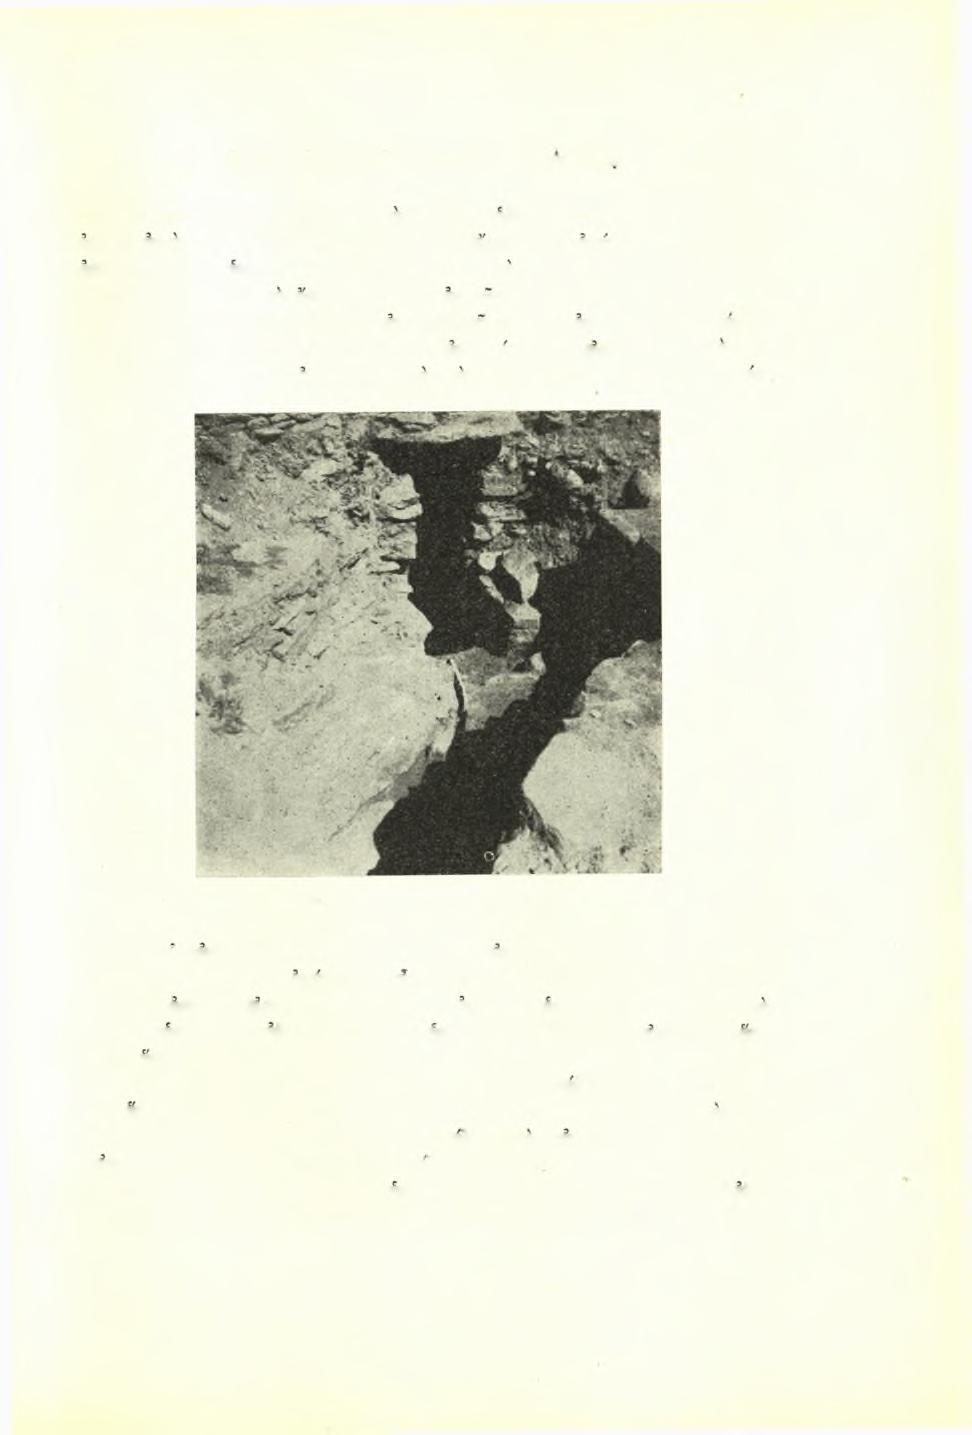 Νικολάου Μ. Κοντολέοντος: Άνασκαφή εν Τήνω 541 φυσικοΰ ήμισκλήρου βράχου' είς την κρήνην οδηγεί διάδρομο; έσκαμμένος επίσης εντός χοϋ βράχου.